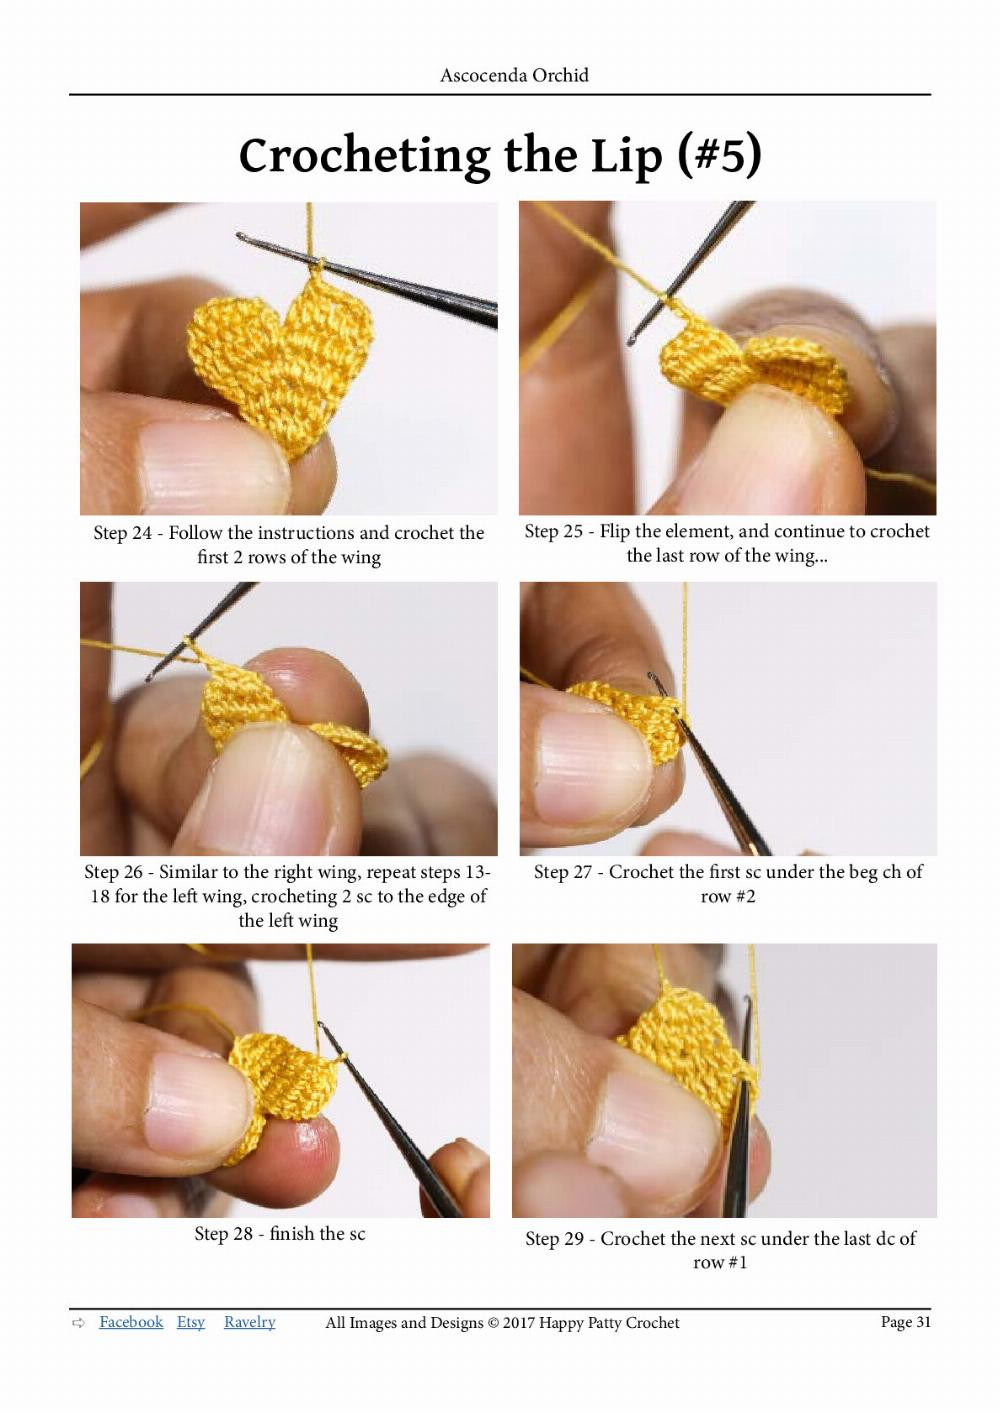 Crochet Ascocenda Orchid crochet pattern